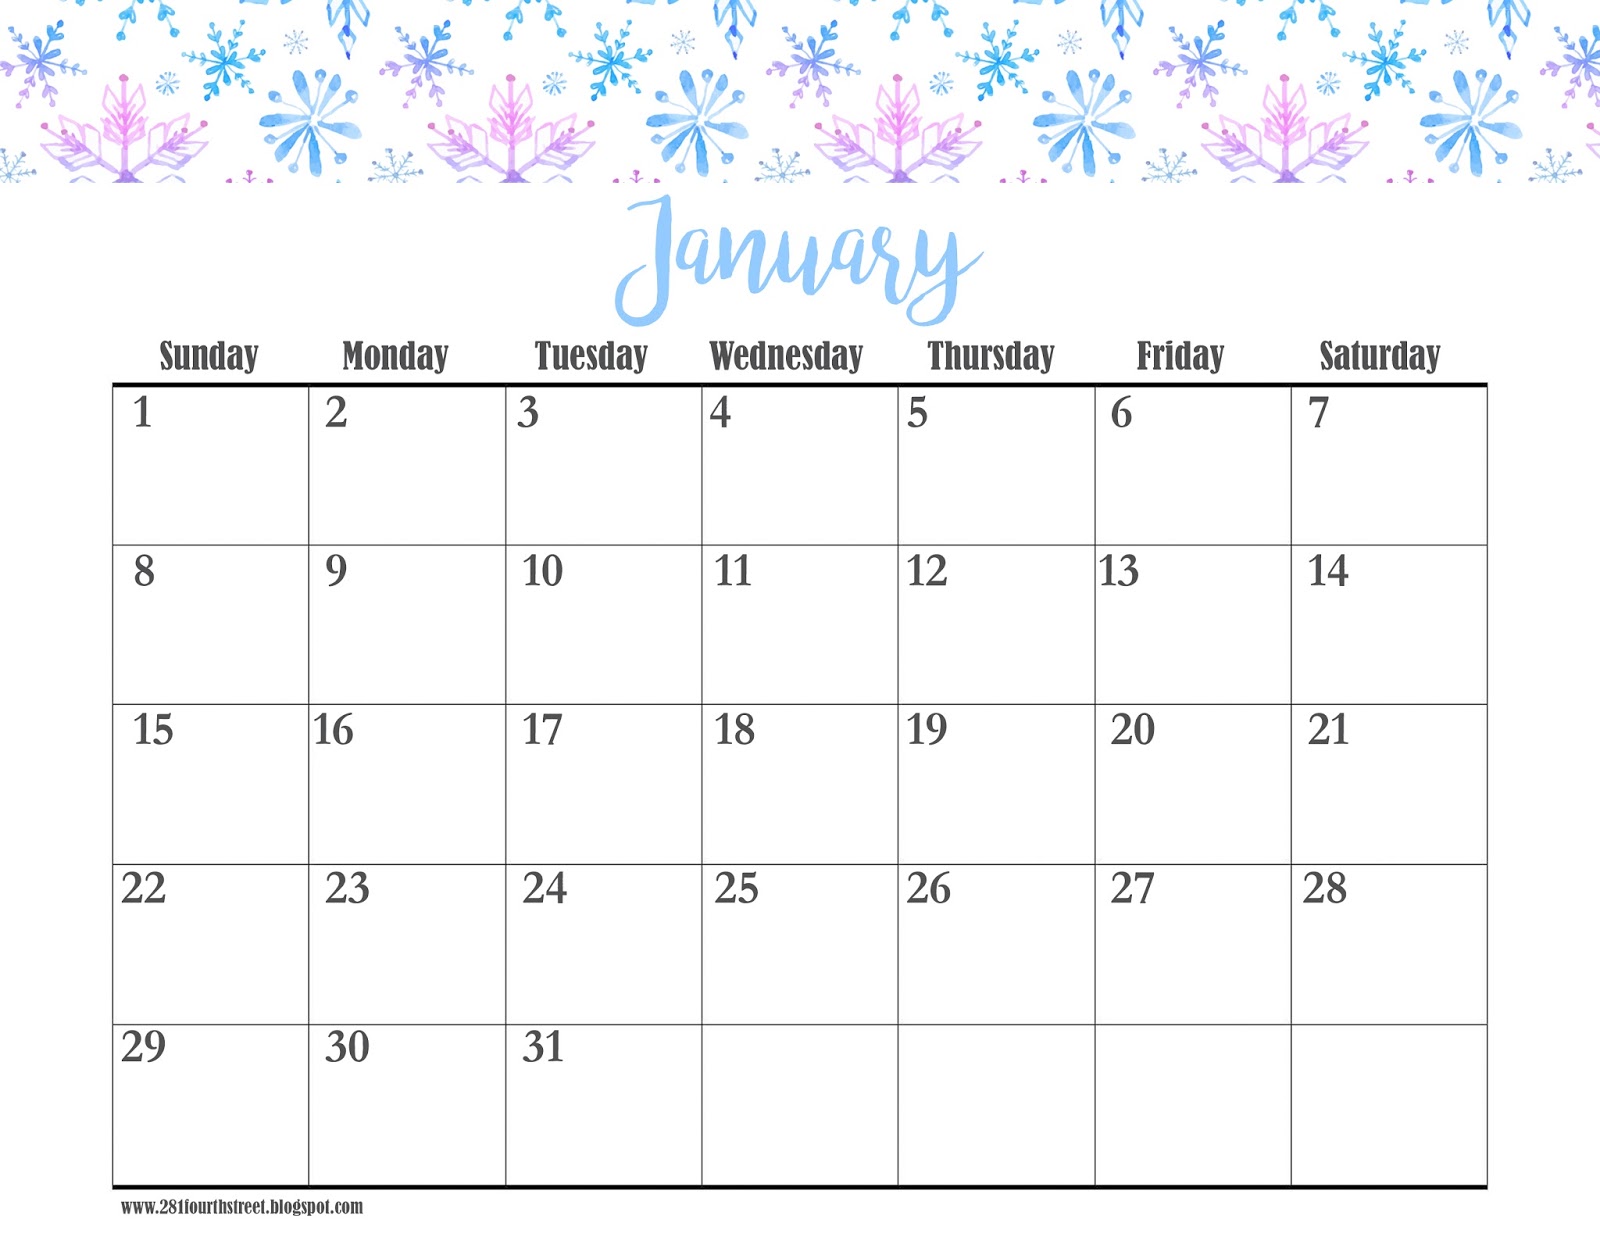 Календарь январь. 24 Января календарь.